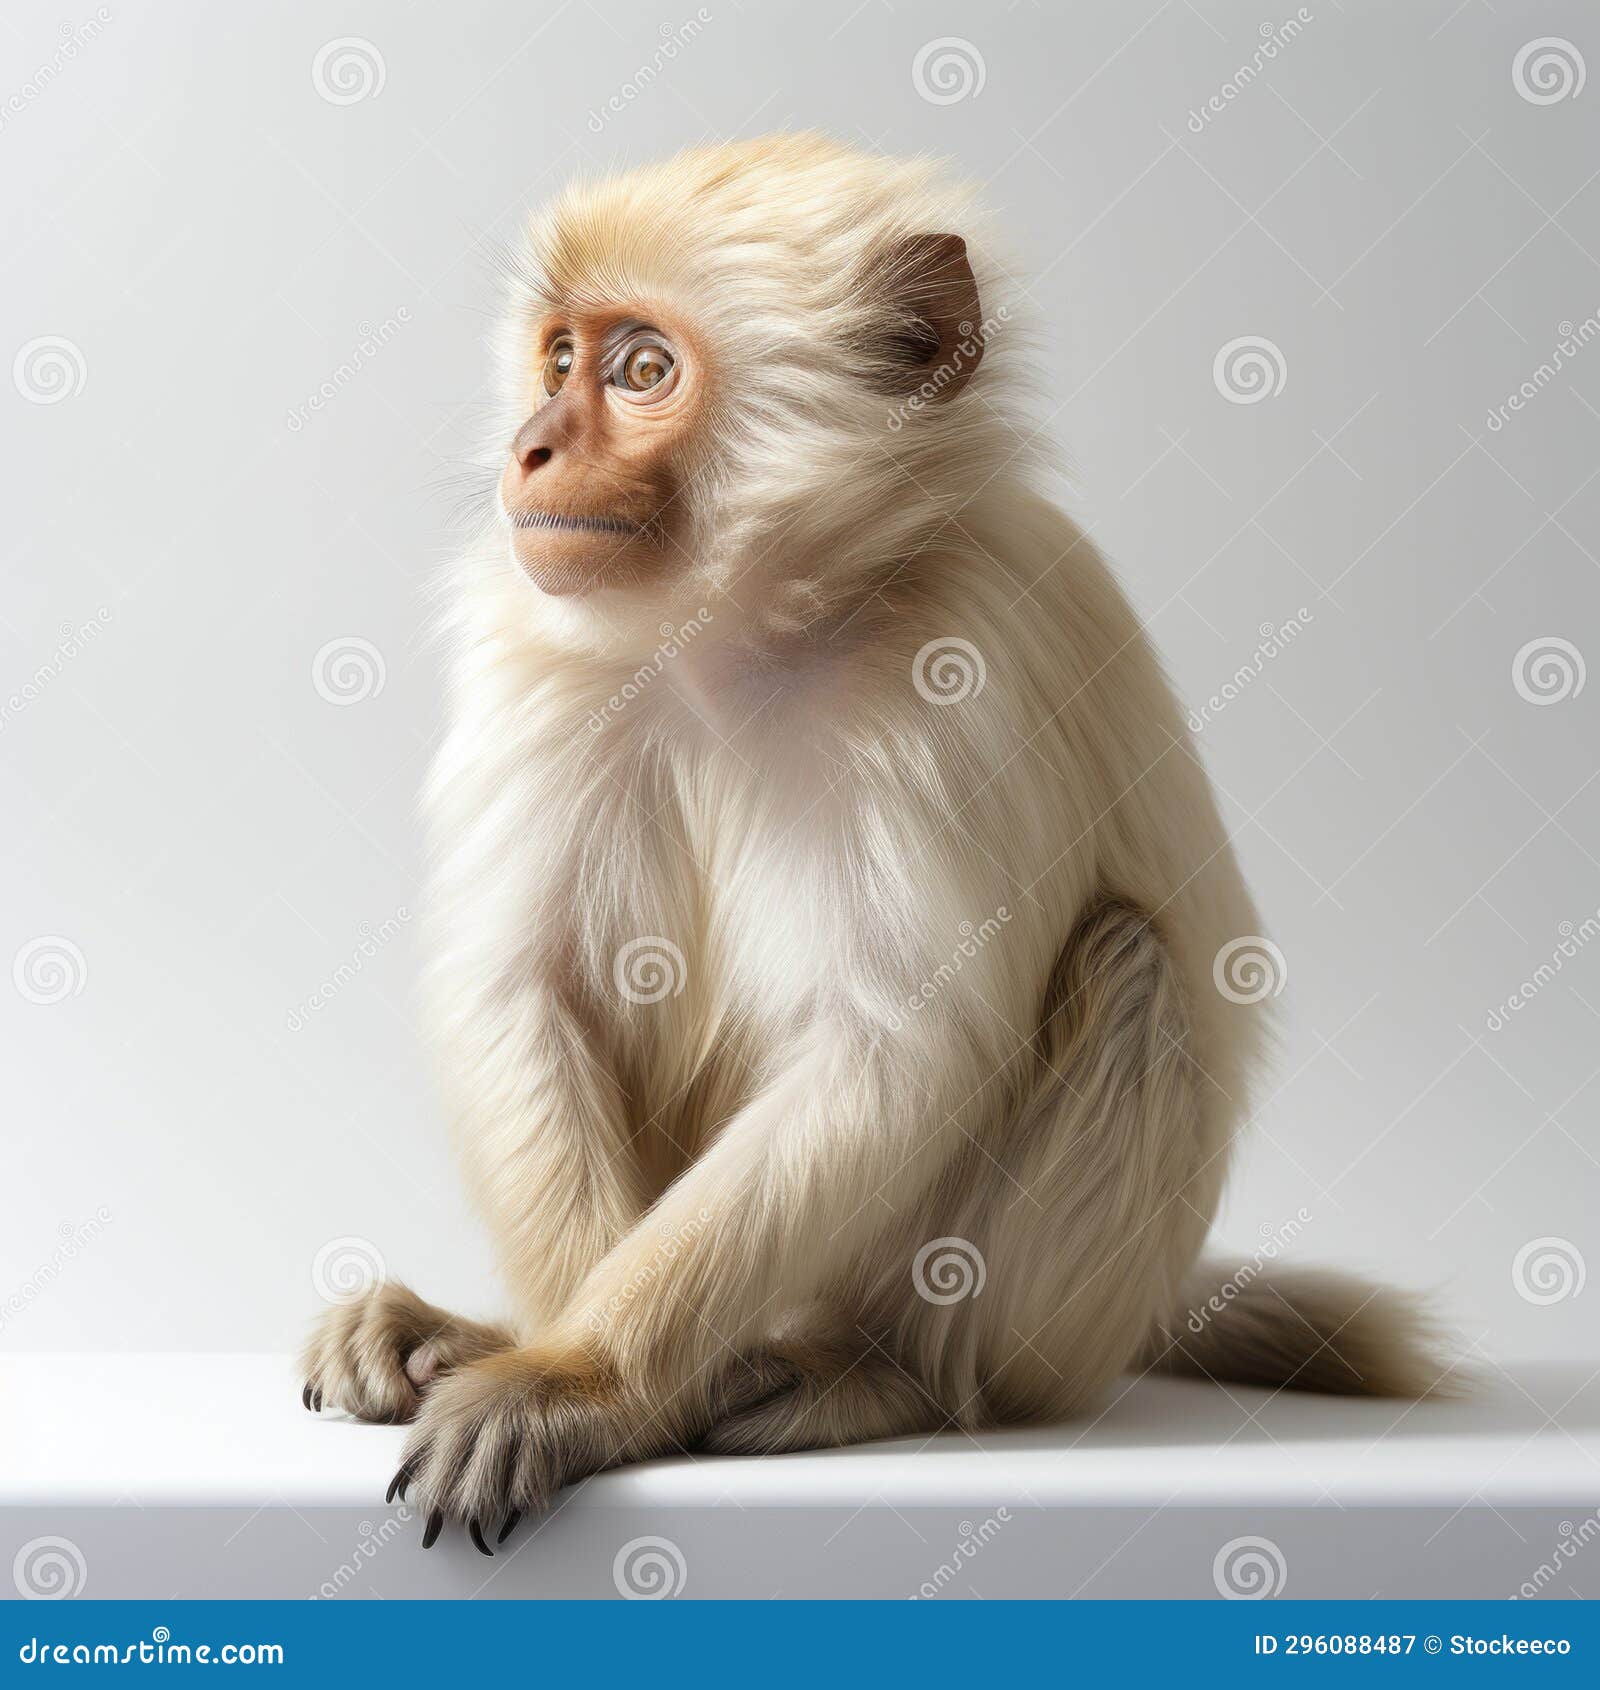 minimalist white monkey sitting on white surface